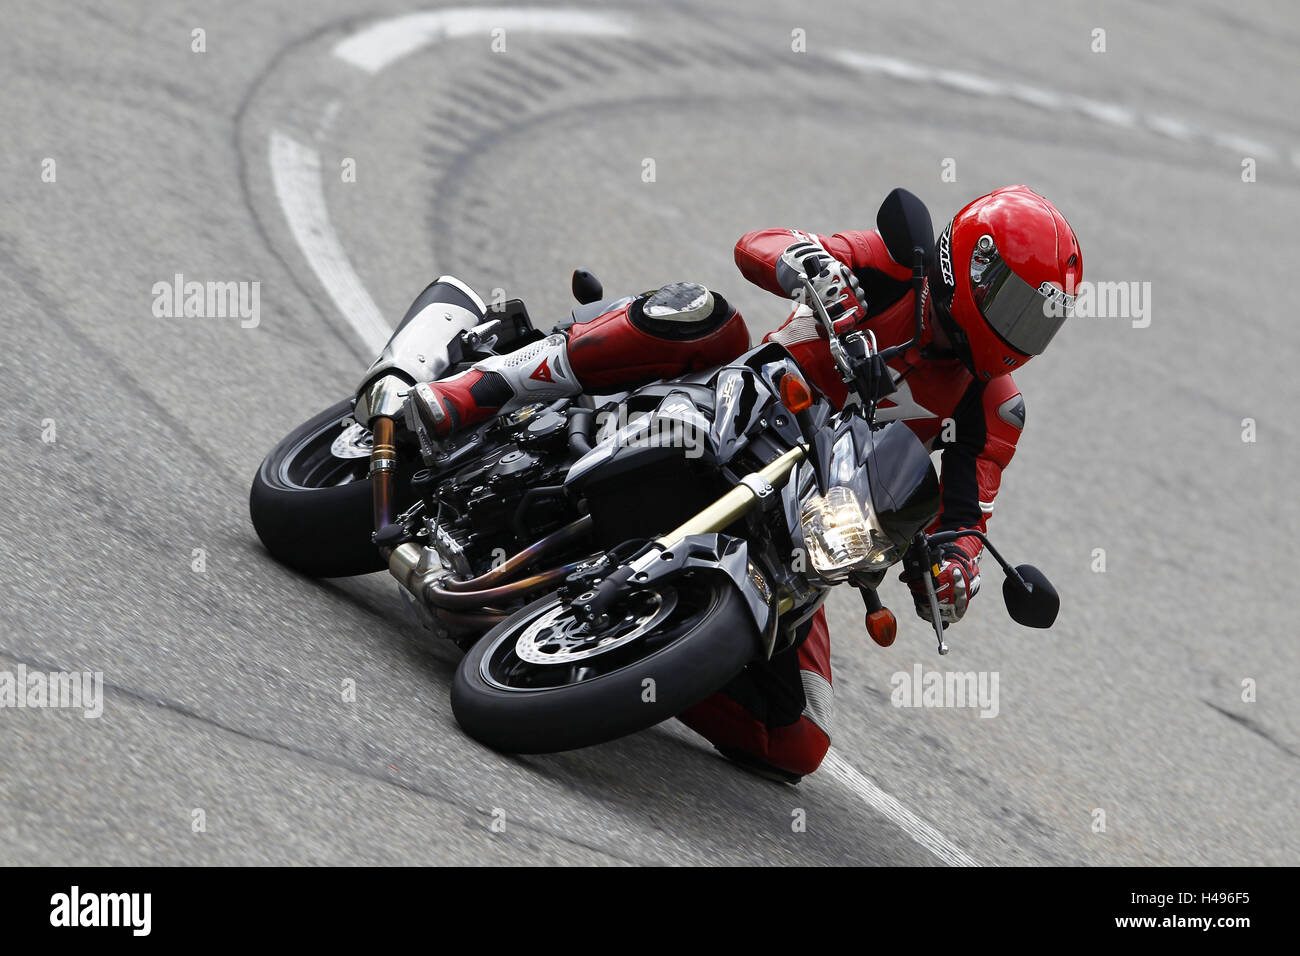 Motorcyclist in bend, Suzuki GSR, dynamically, Stock Photo